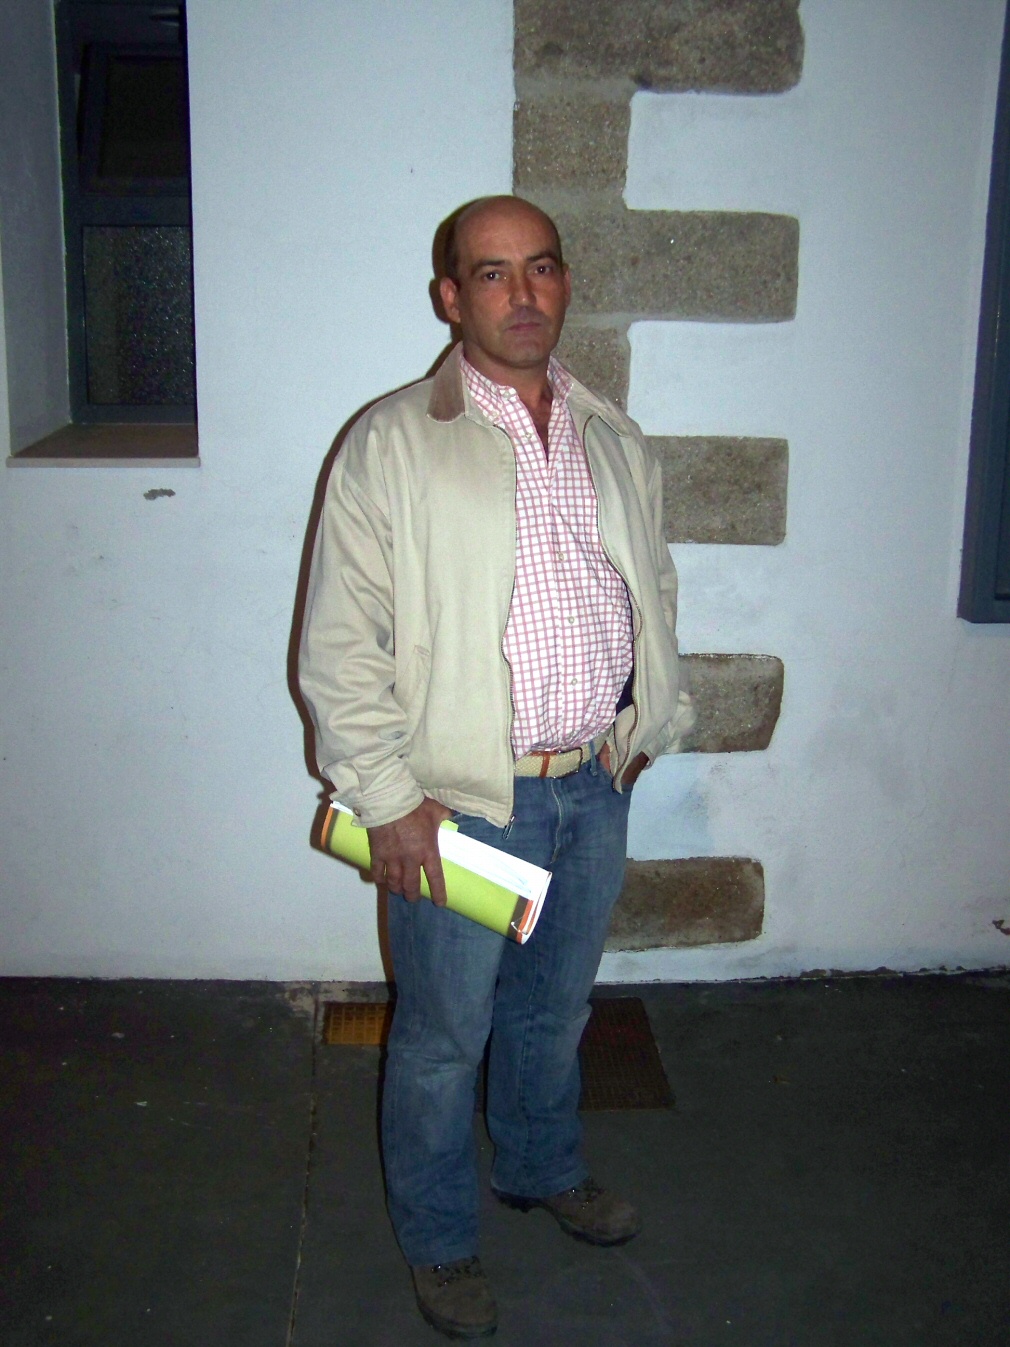 Entrevista a Antonio Pizarro. Agricultor y Secretario general de la comarca de Vegas Altas - Norte de UPA - UCE Extremadura.